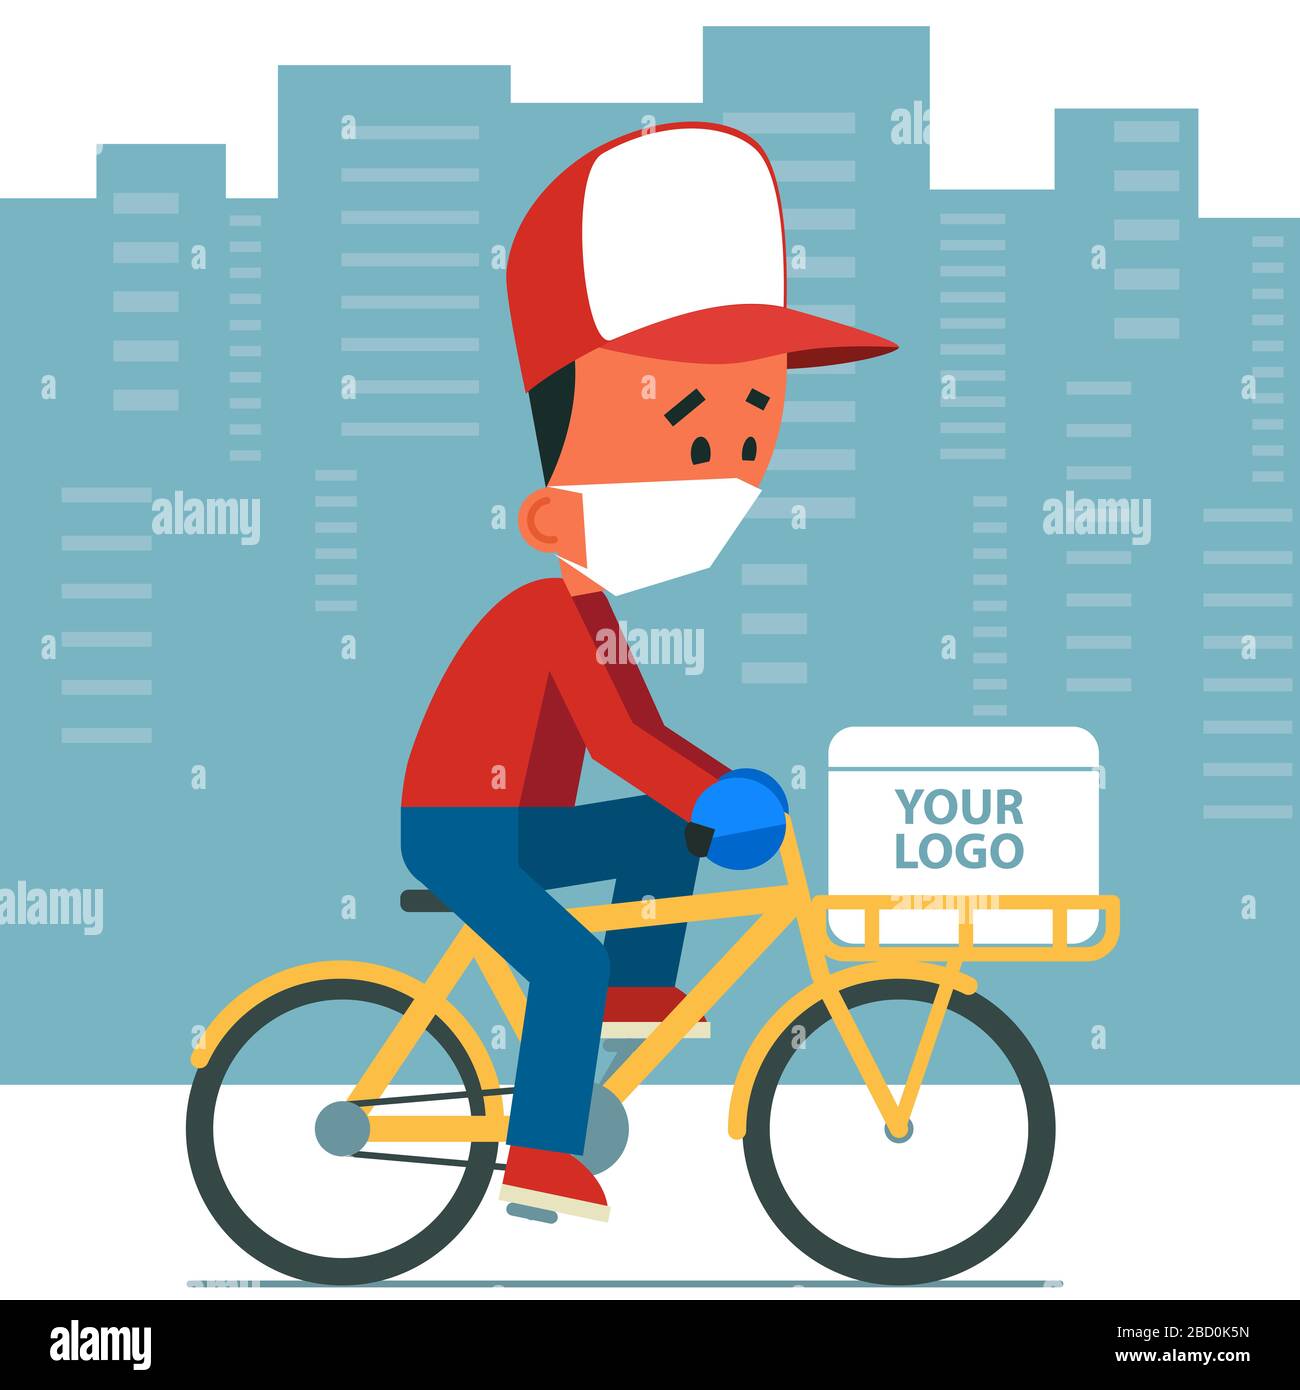 Kontaktloser, sicherer Lieferservice. Cartoon junger Mann mit Schutzmaske und Handschuhen auf einem Fahrrad mit Lieferbox. Stockfoto